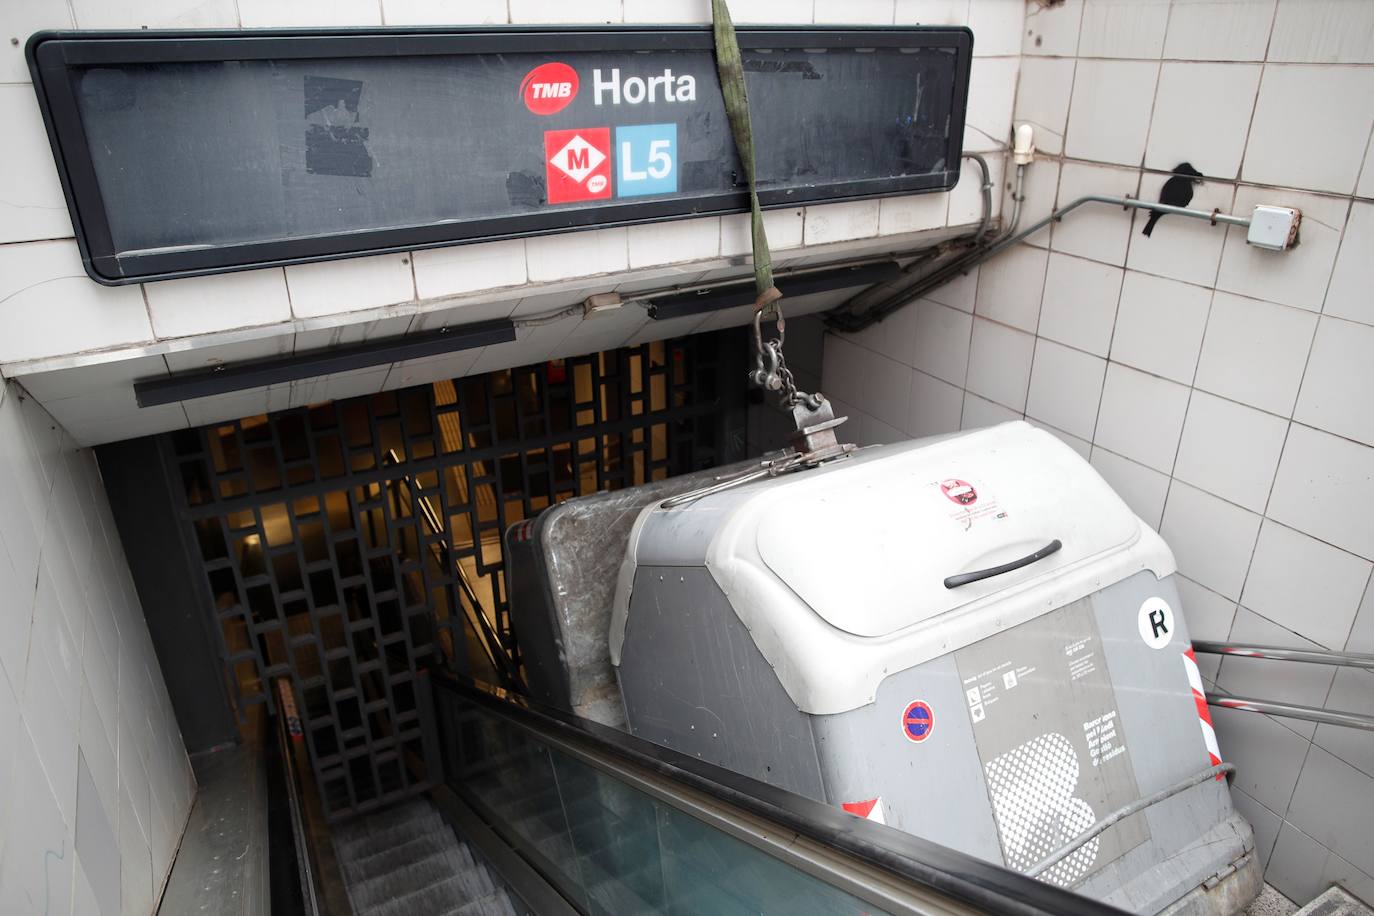 Un contenedor de basura bloquea la entrada de la estación del Metro de Horta